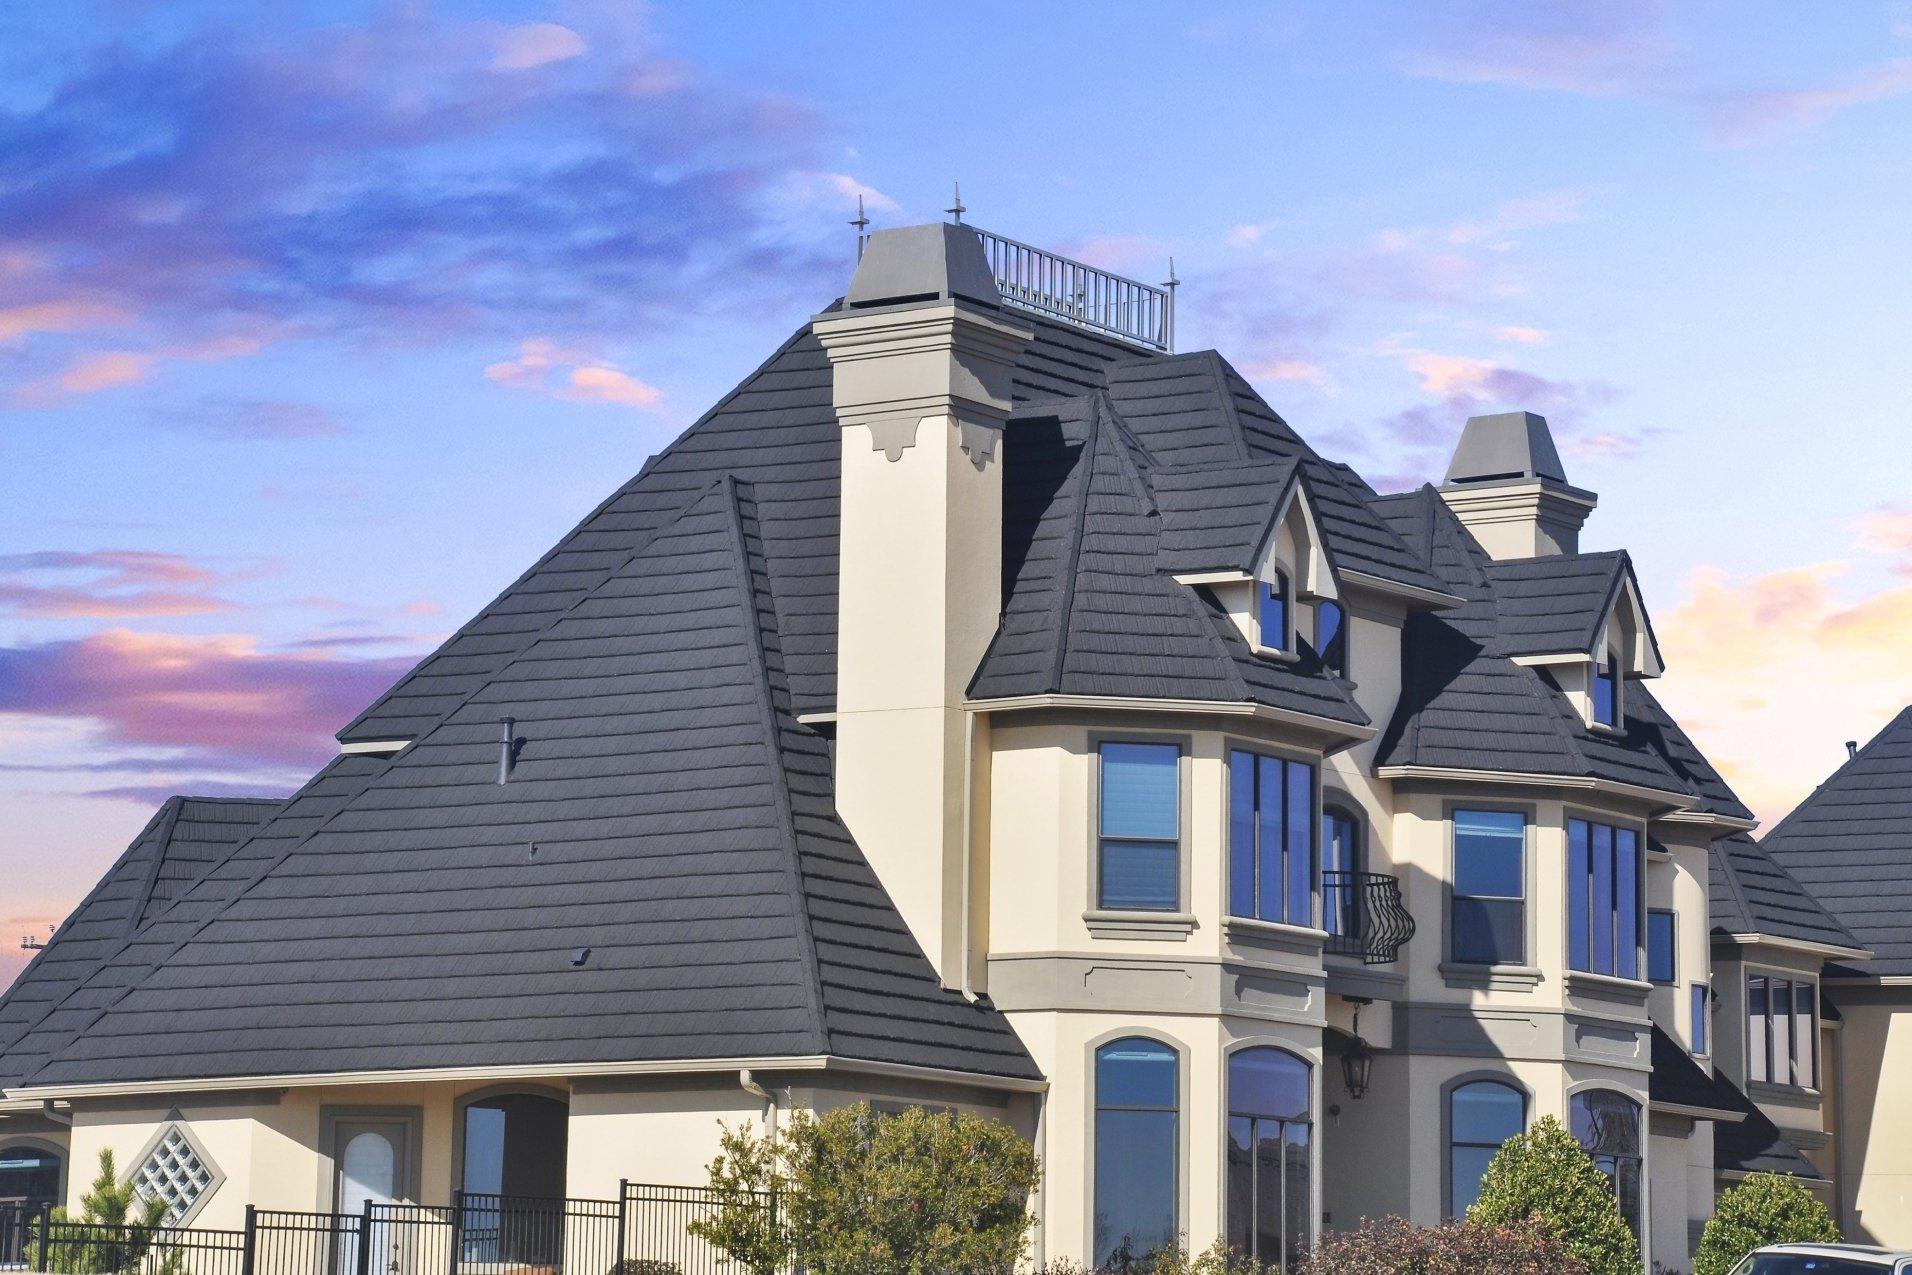 屋面金属彩石瓦的优点 屋面金属彩石瓦是一种集装饰性和功能性于一体